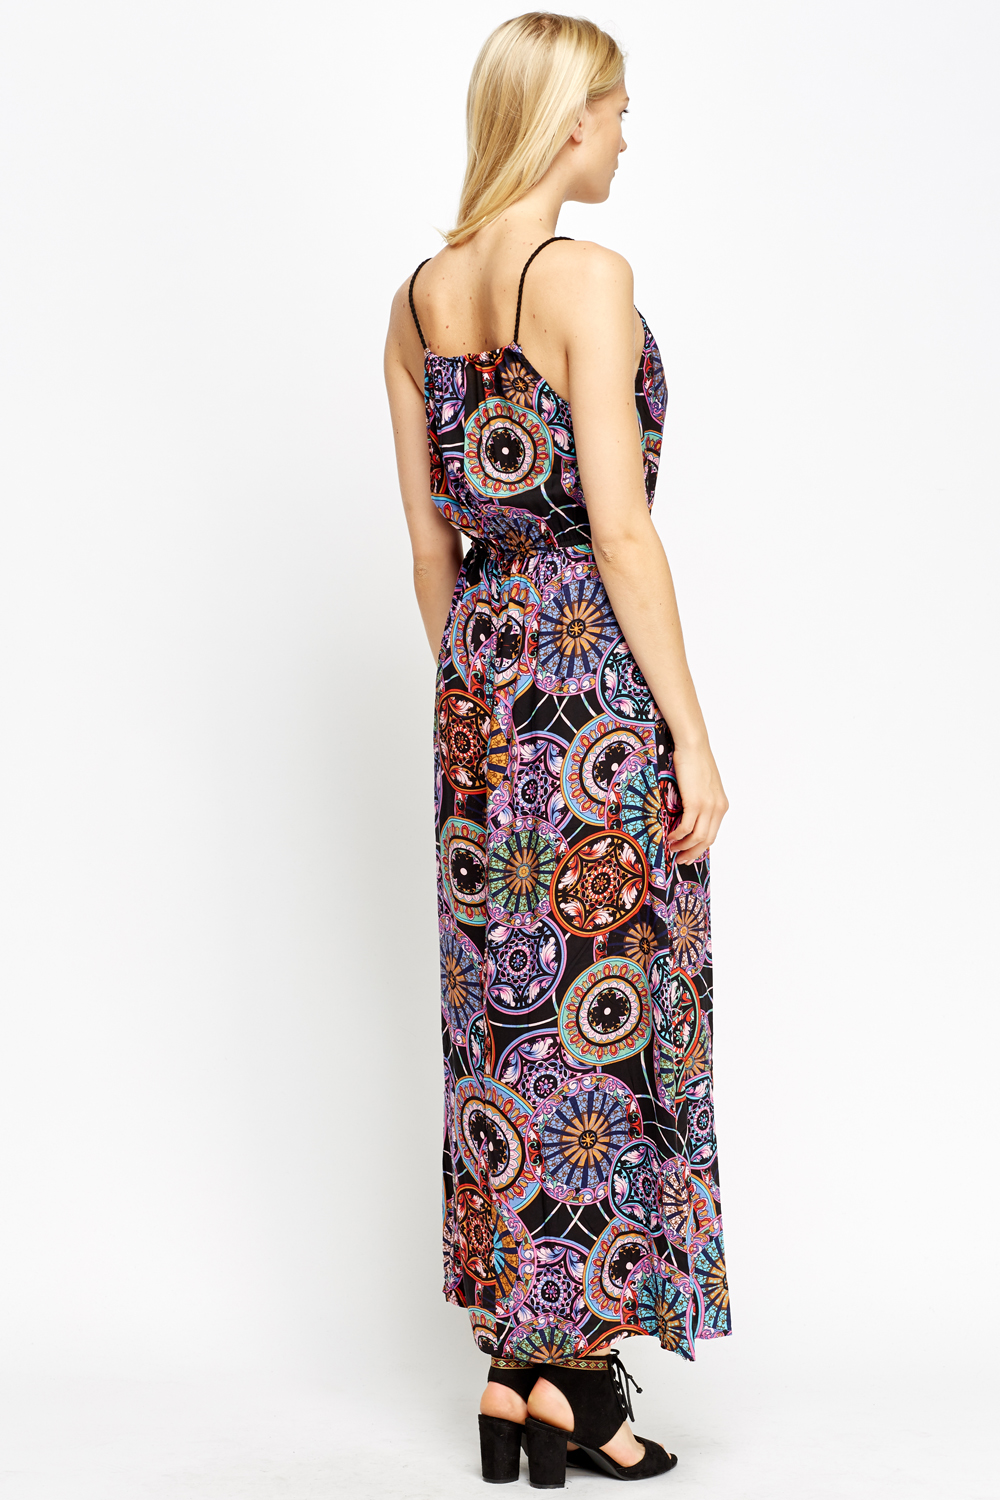 Kaleidoscope Print Maxi Dress - Just $7